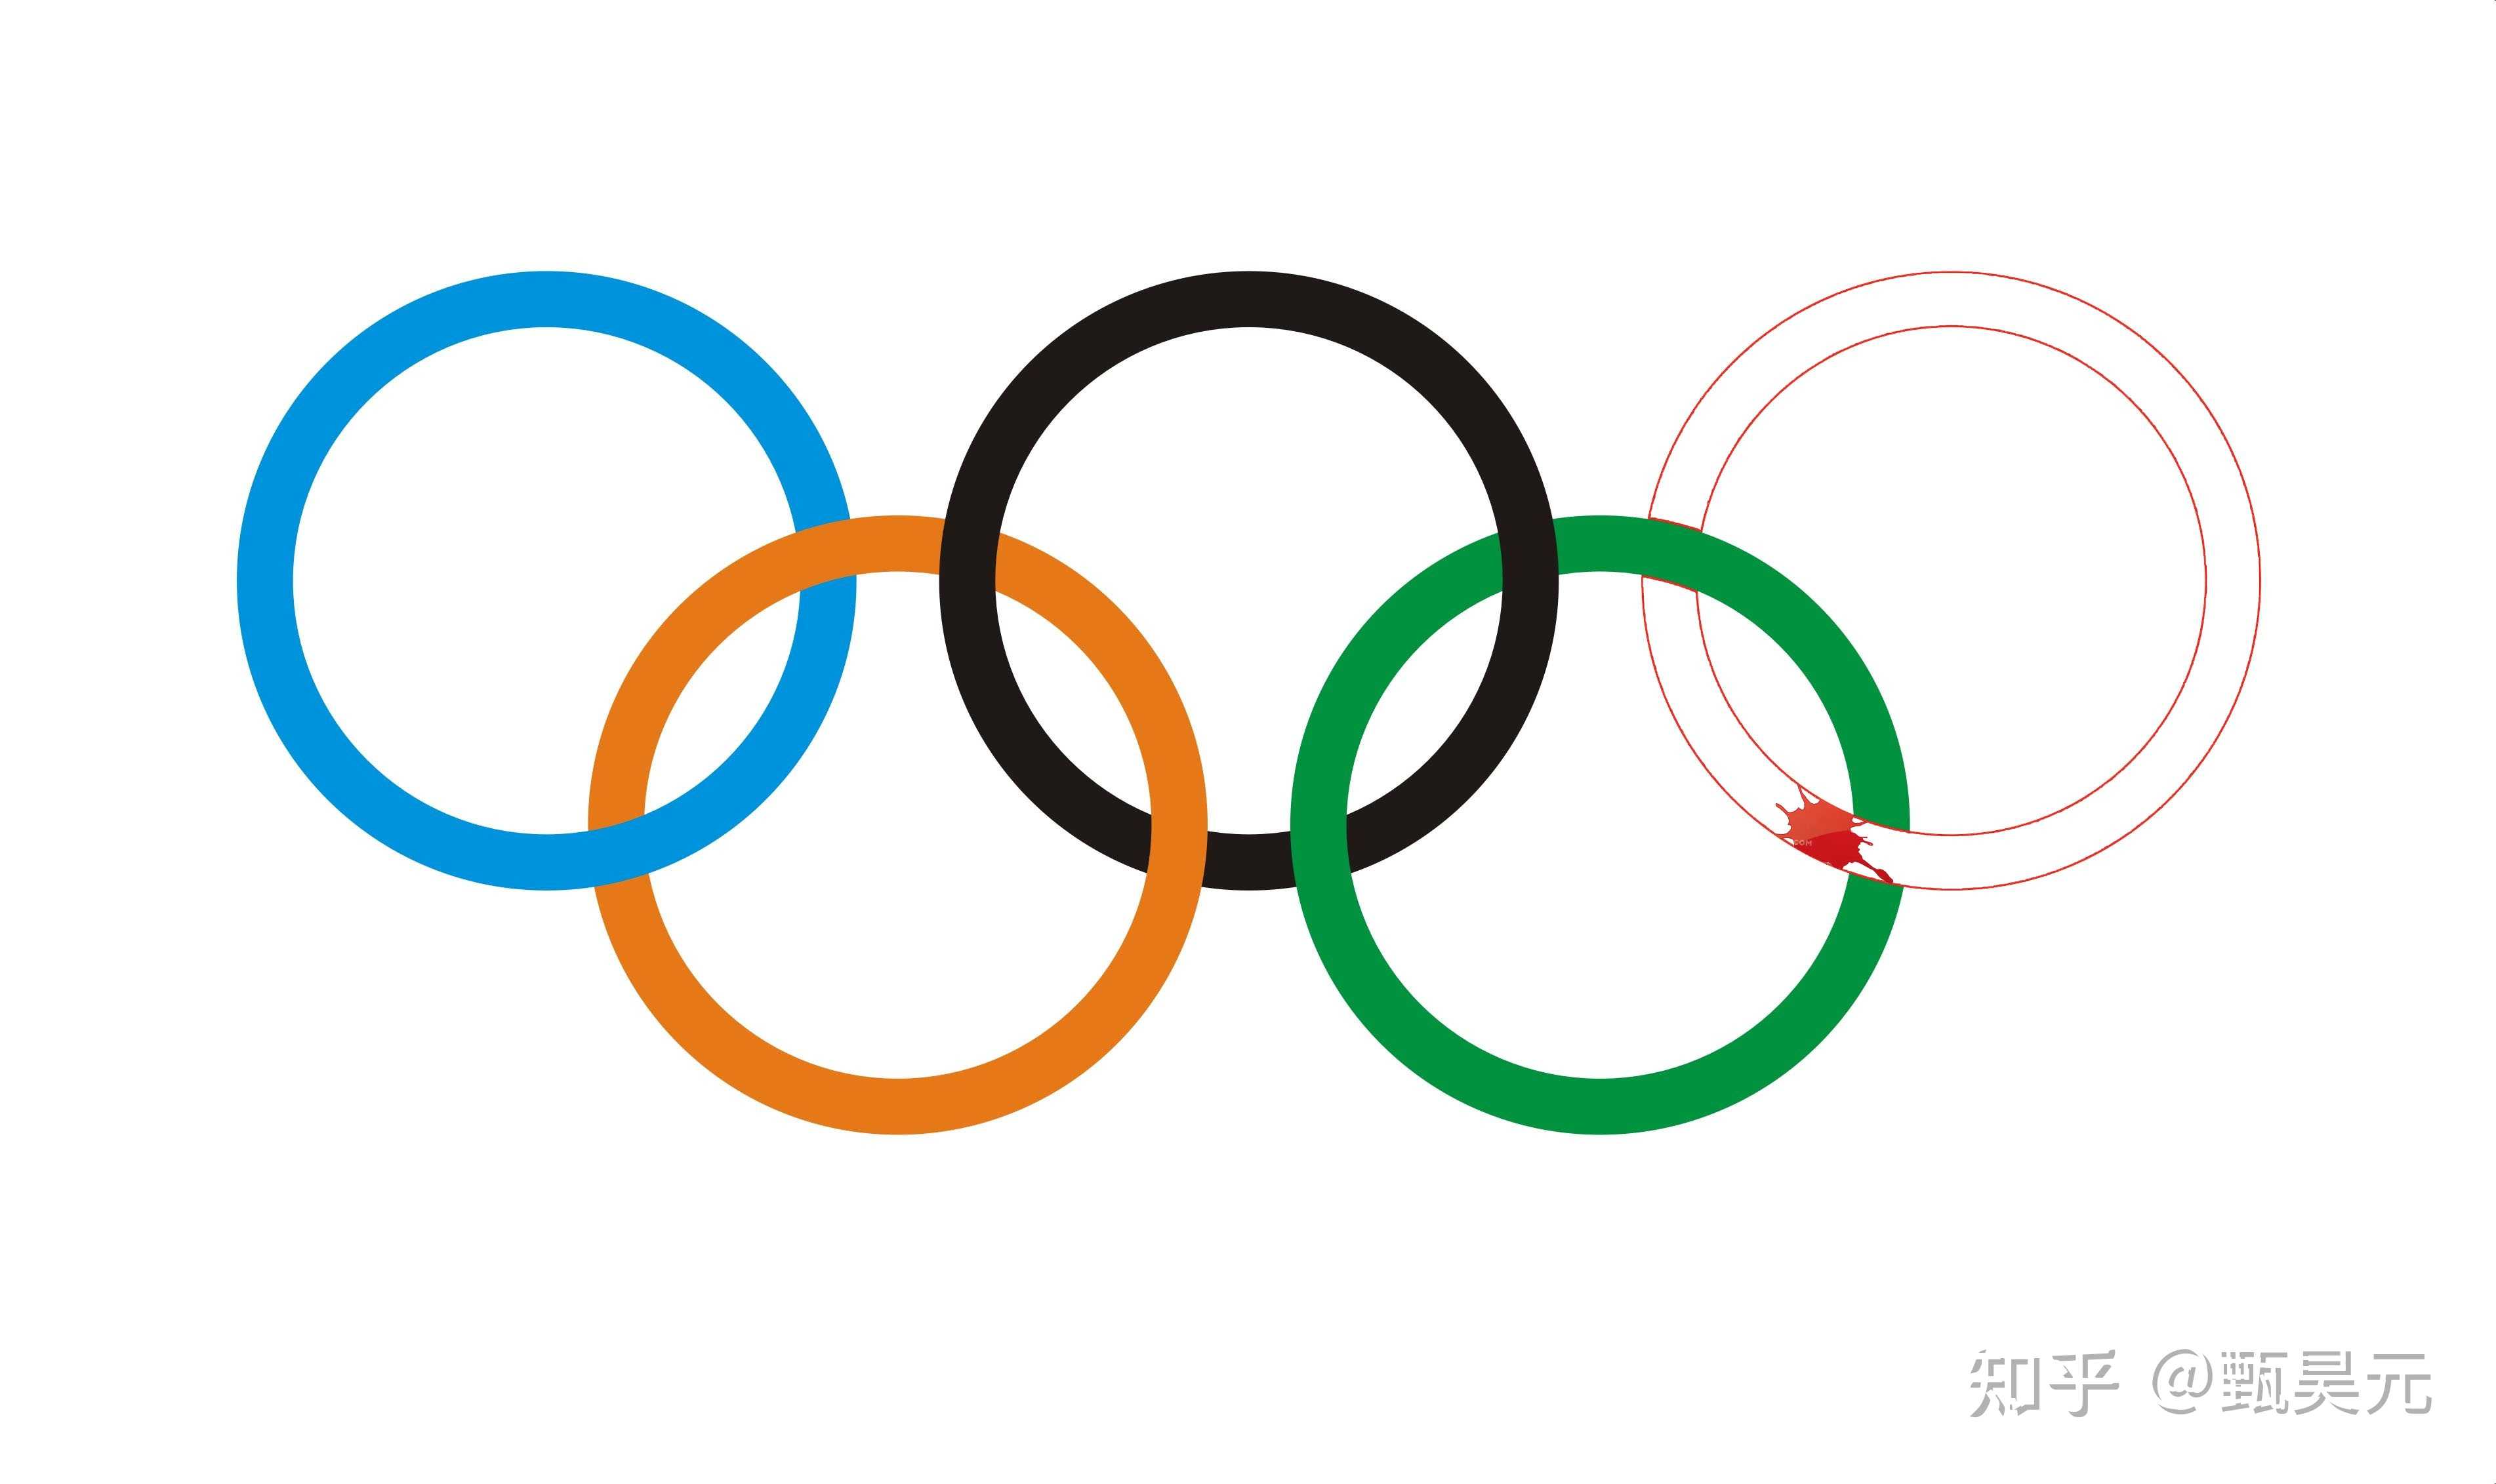 奥运五环的那个红色的环代表着美洲之所以用红色是因为美洲原住民种族